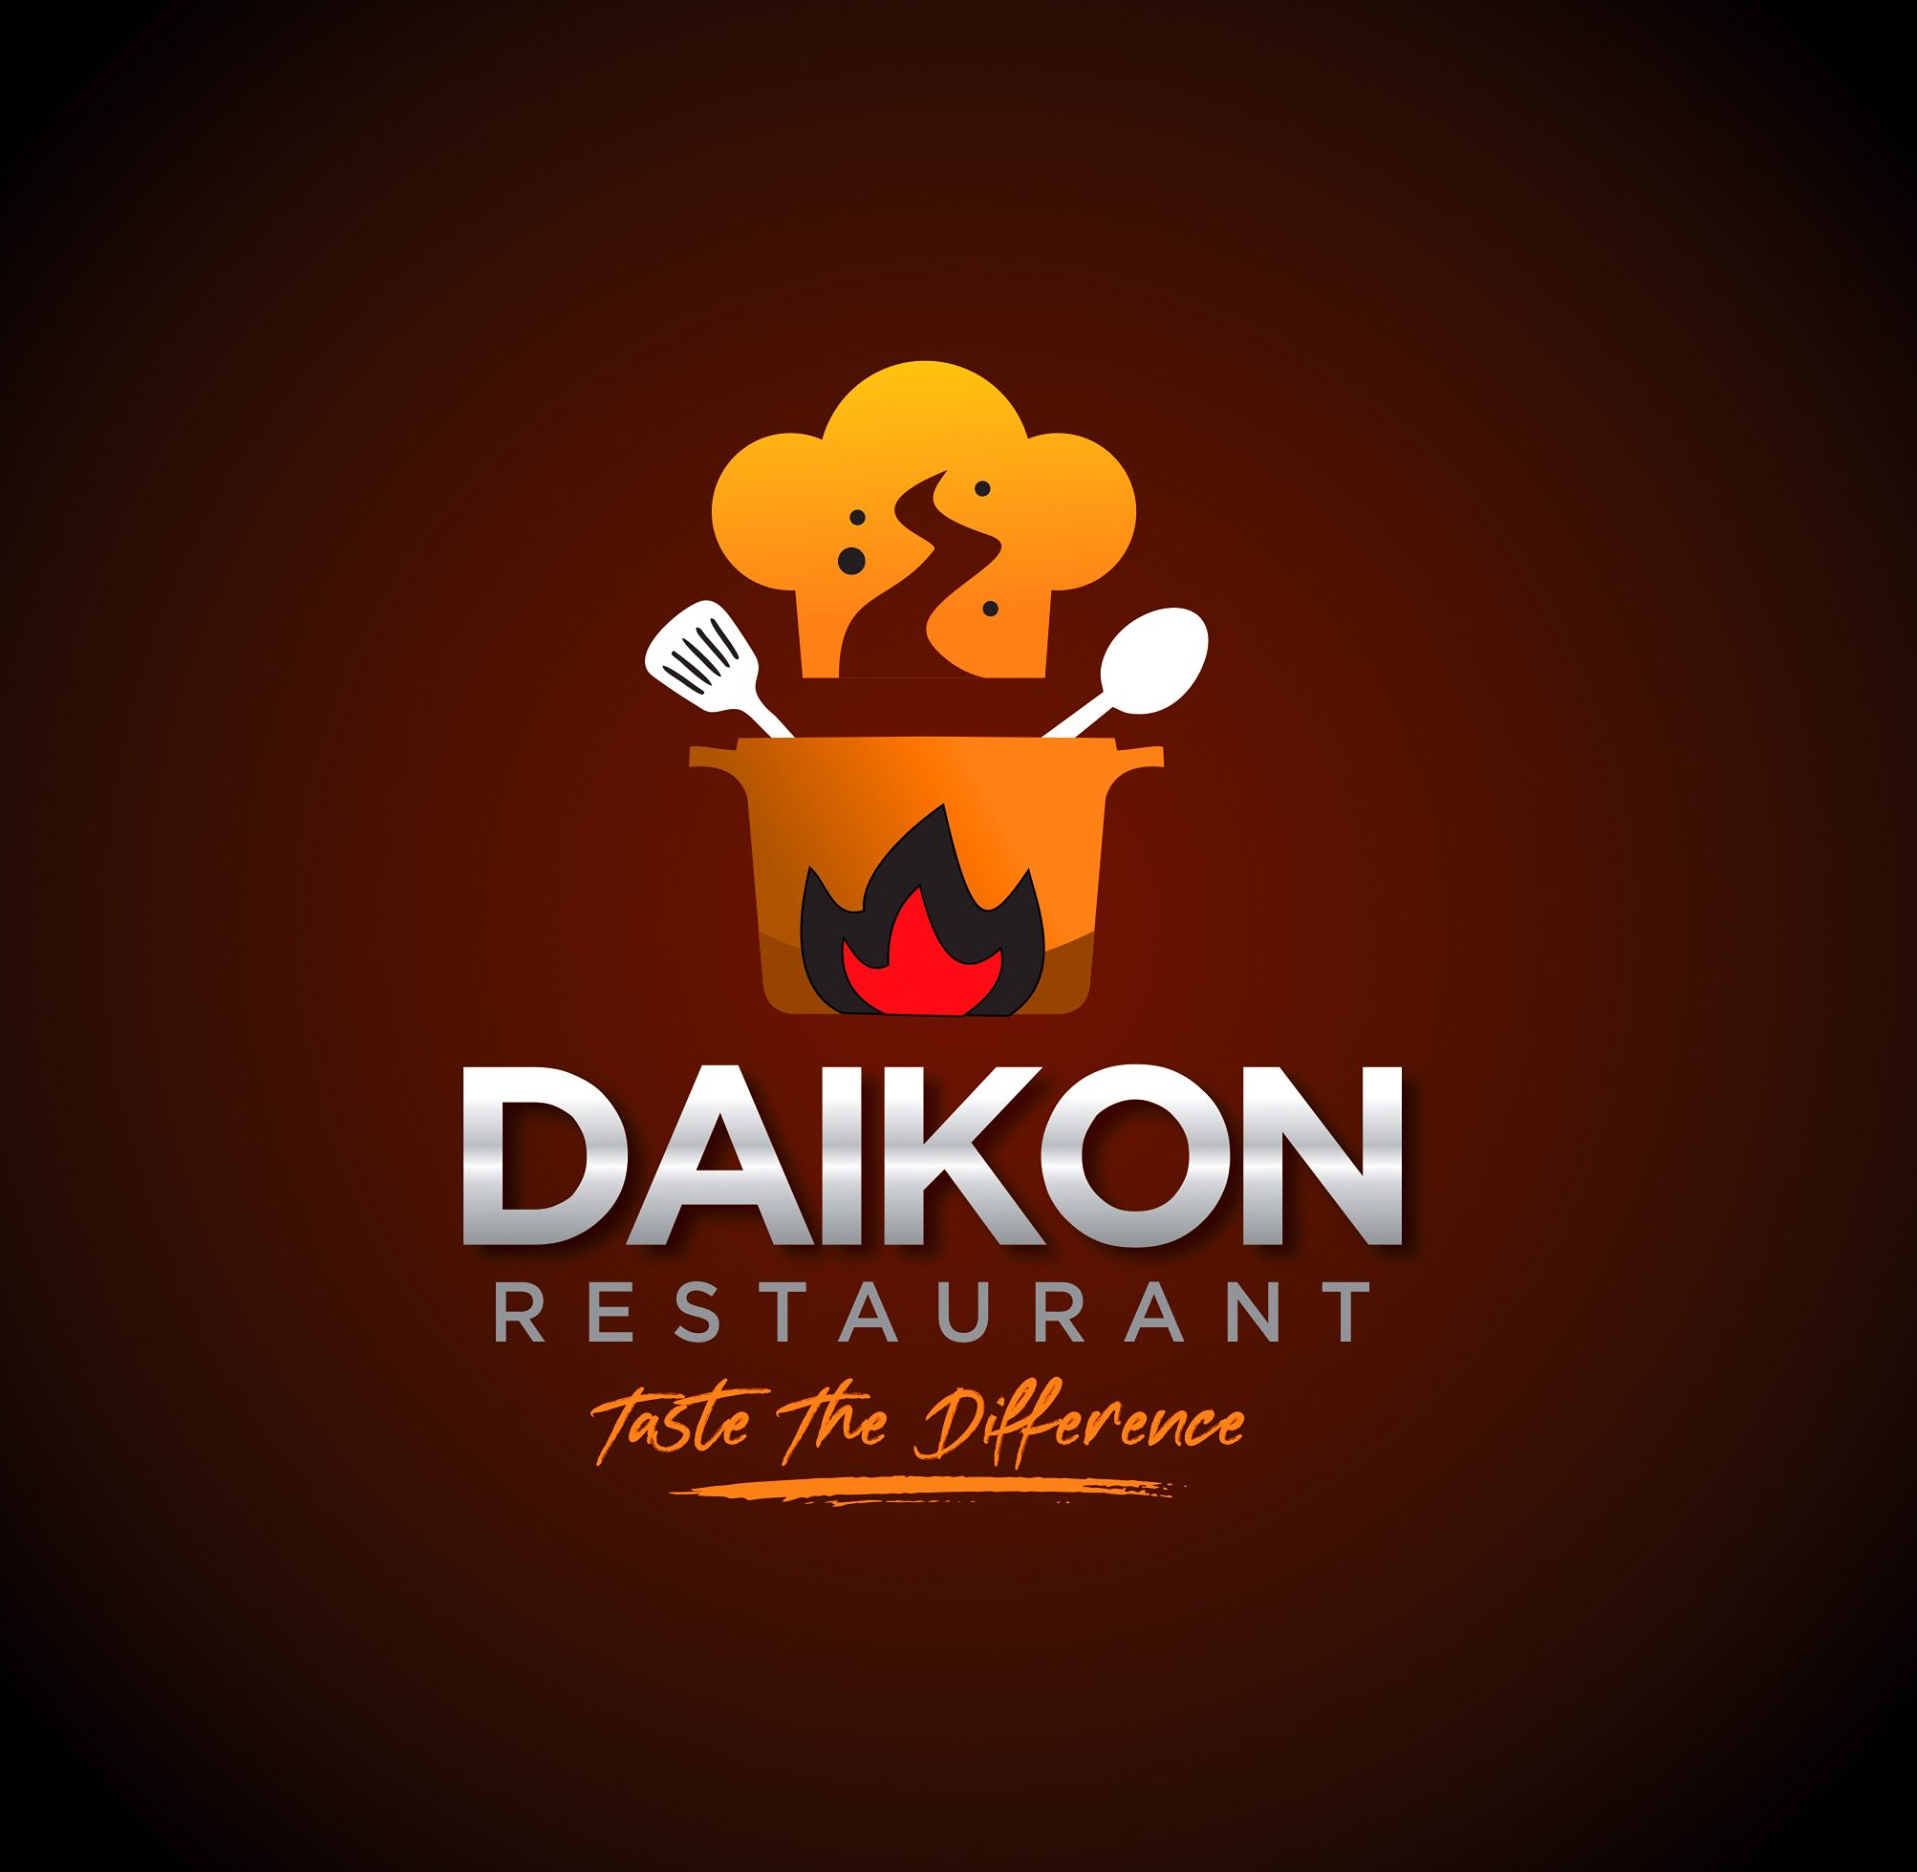 Daikon Restaurant